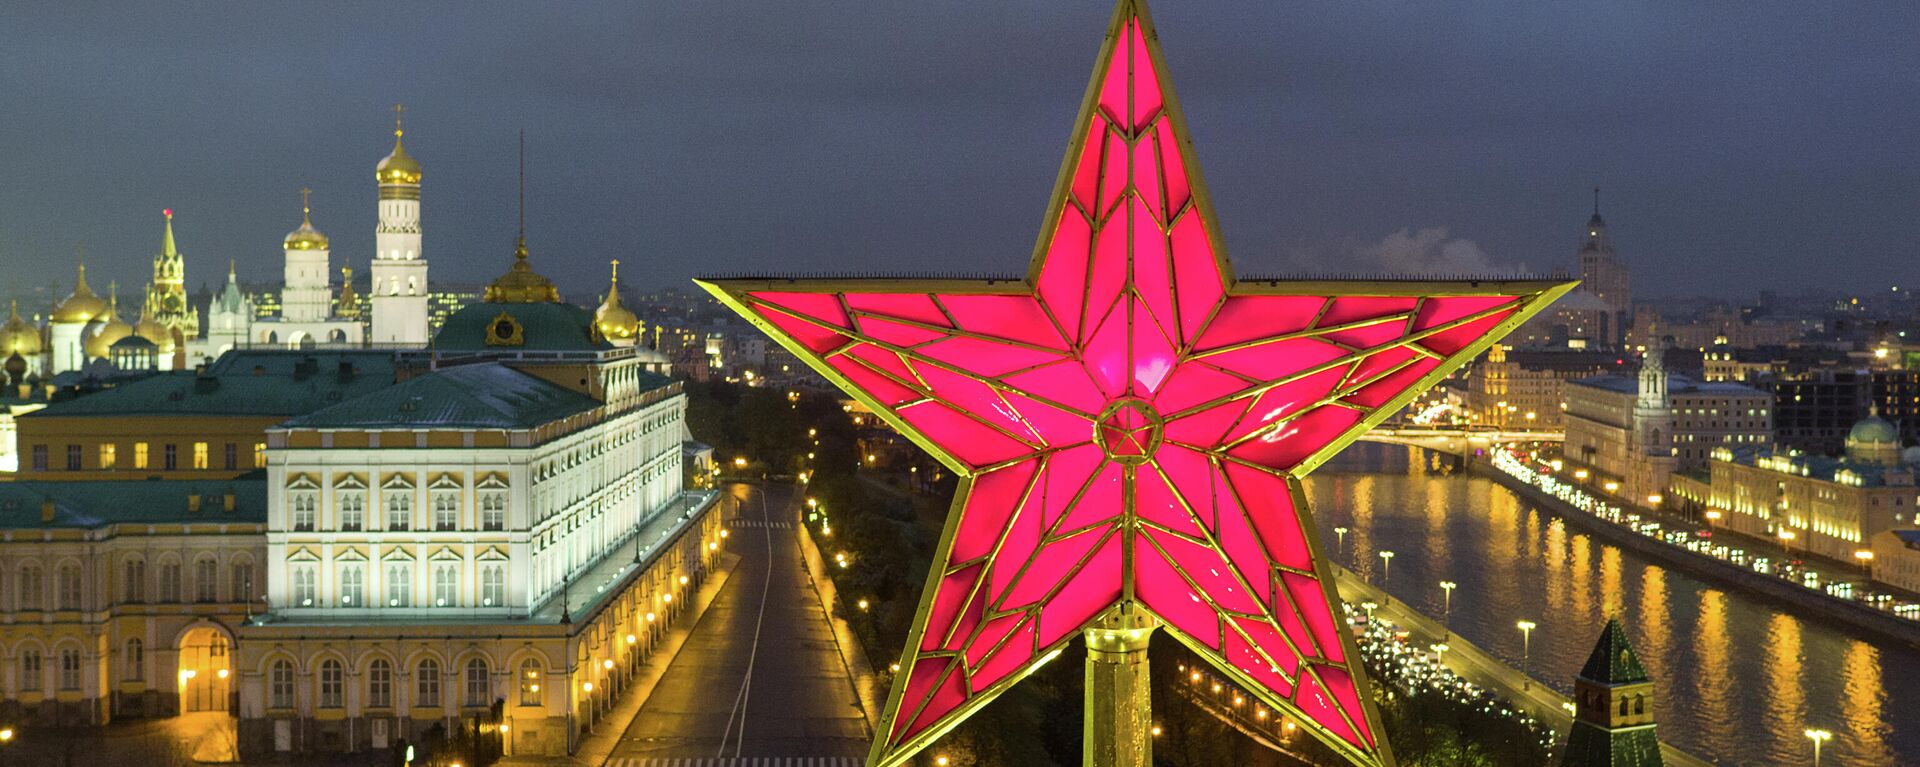 Звезда на Водовзводной башне Московского Кремля - Sputnik Узбекистан, 1920, 25.03.2021